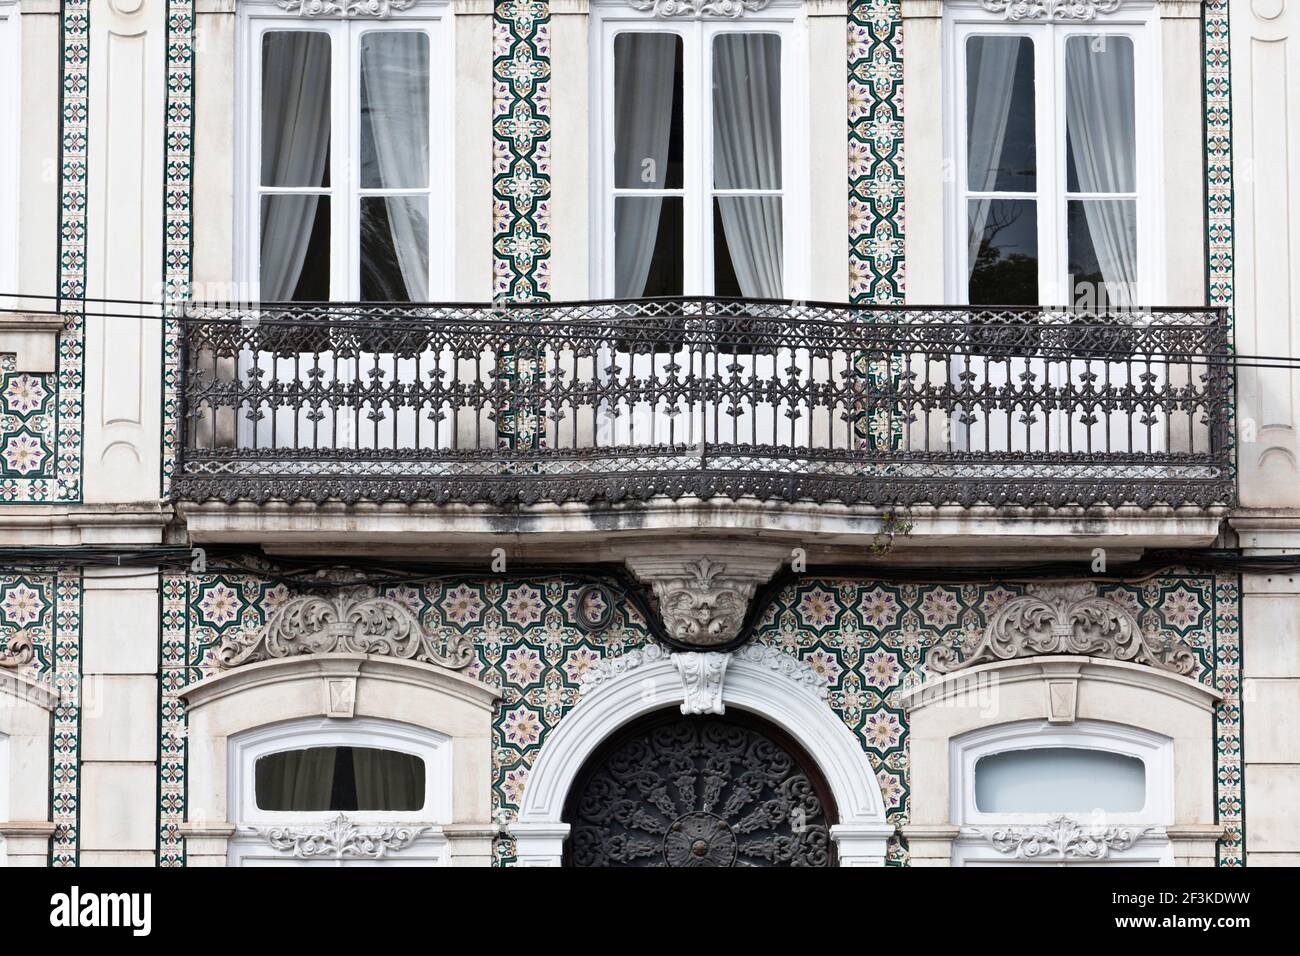 Des carreaux décoratifs en céramique azulejos ornent la façade d'un ancien bâtiment à Coimbra, Beira Litoral, Portugal Banque D'Images